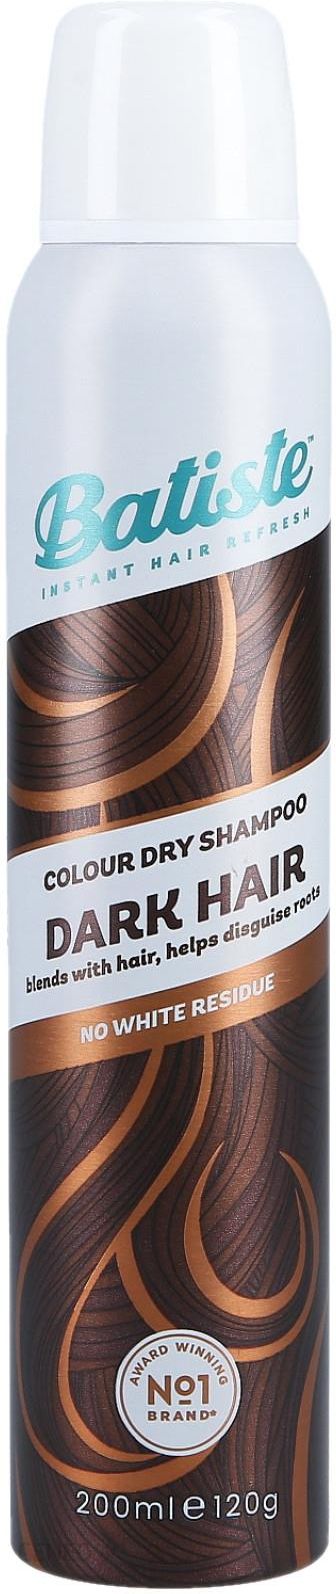 miniaturowy suchy szampon do ciemnych włosów